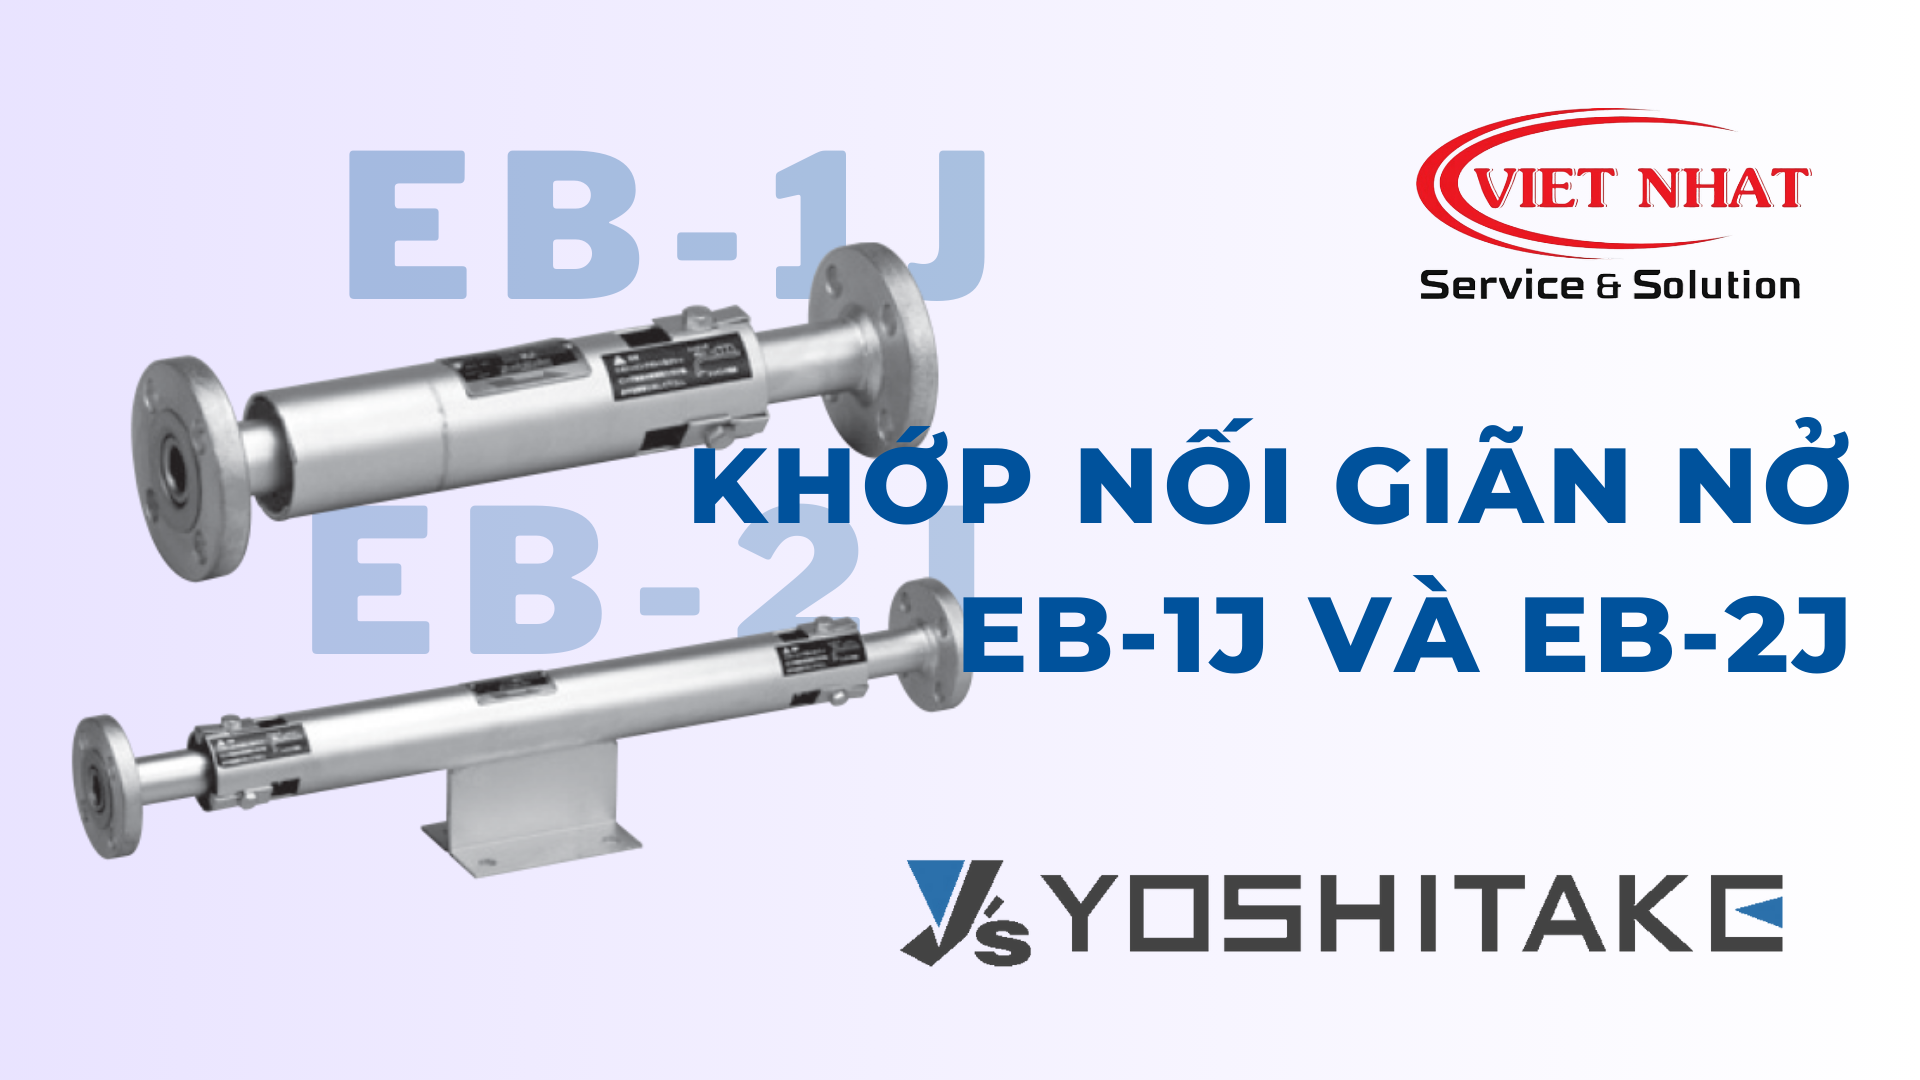 Ưu điểm và Ứng dụng của Khớp nối giãn nở EB-1J và EB-2J của Yoshitake trong Hệ Thống Đường Ống